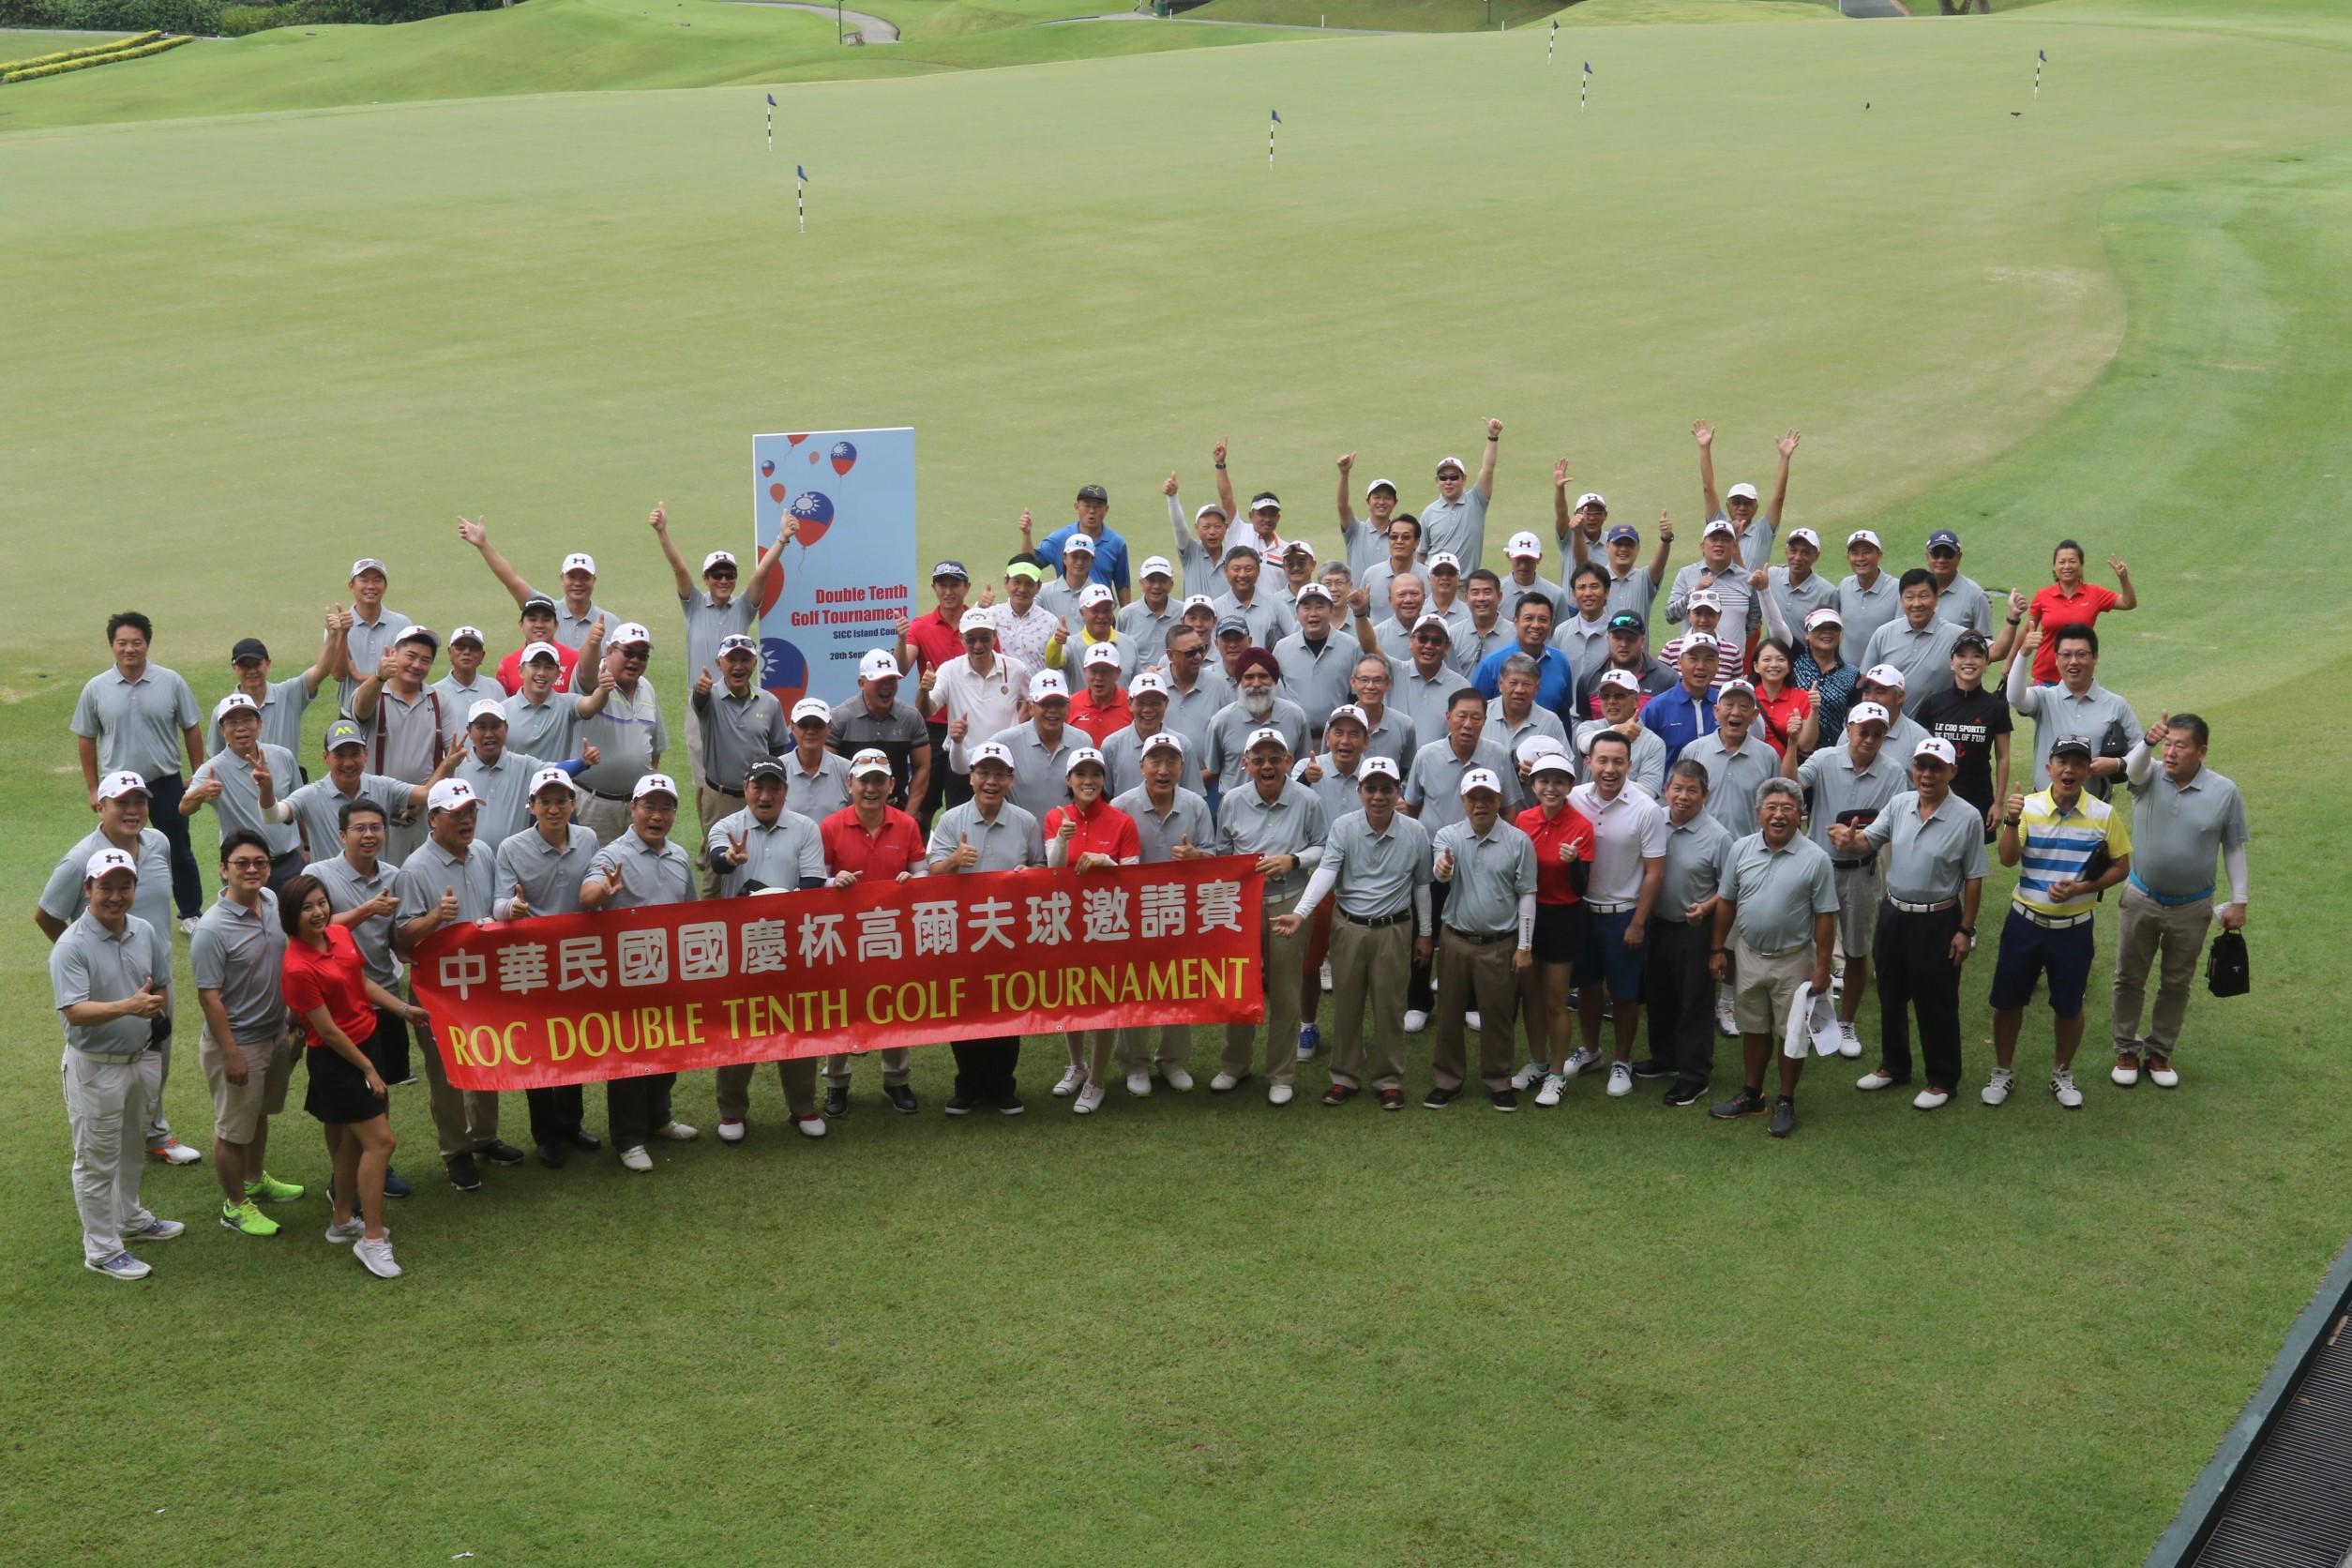 旅星各界舉辦中華民國106年國慶盃高爾夫球賽賽前大合照。(106.9.20)